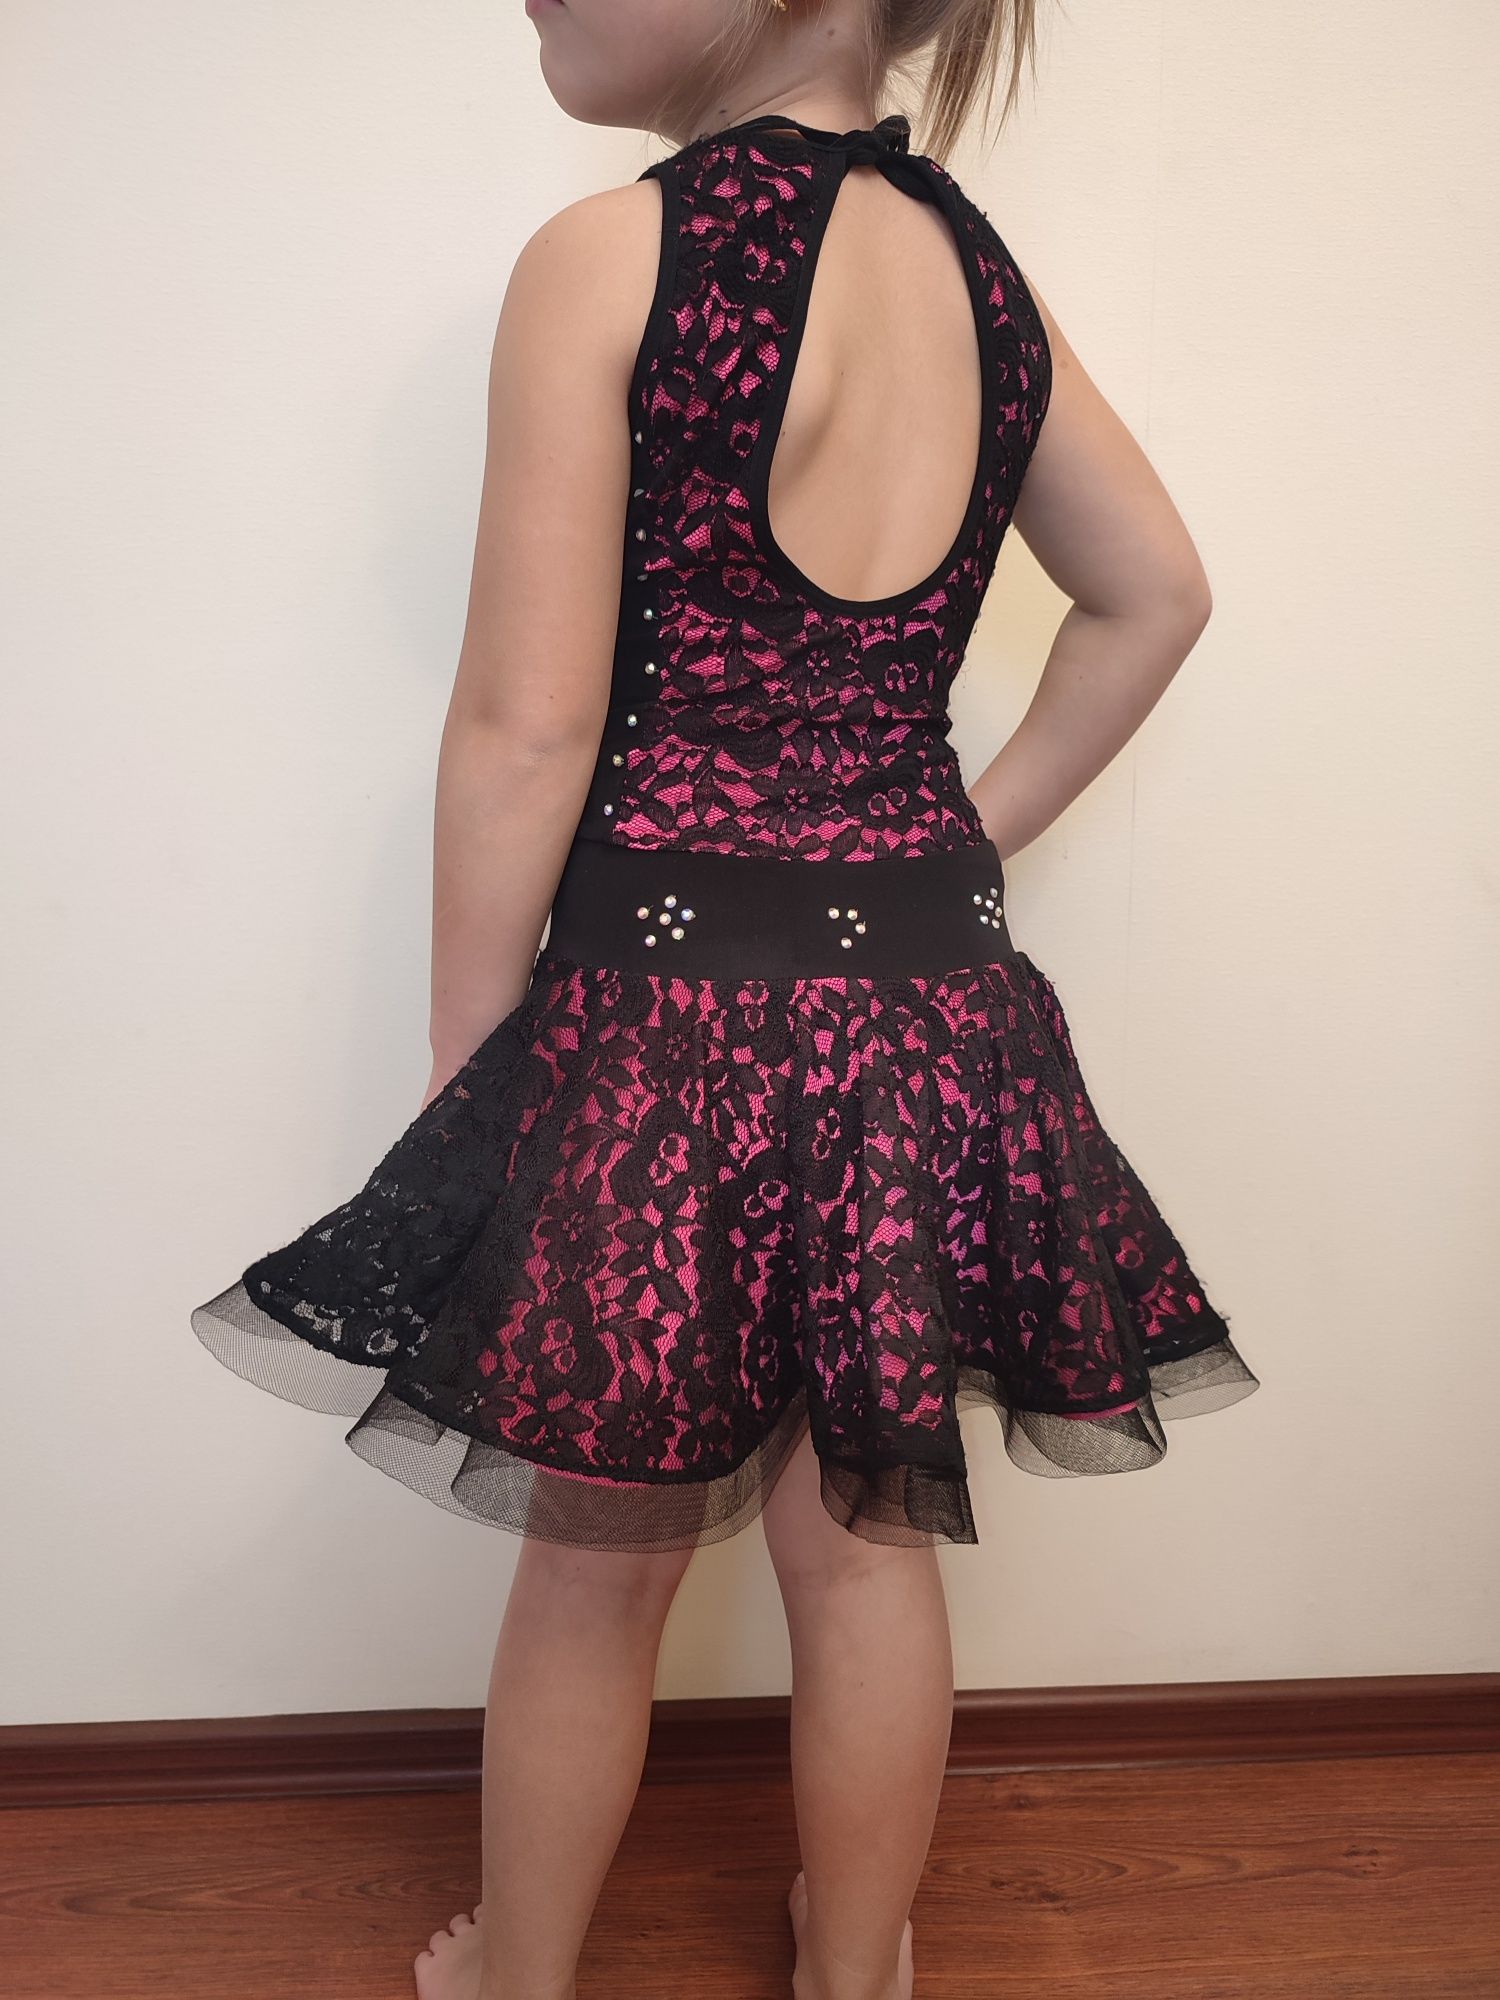 Купальник платье для танцев 116-122 см. Танцевальное платье на девочку